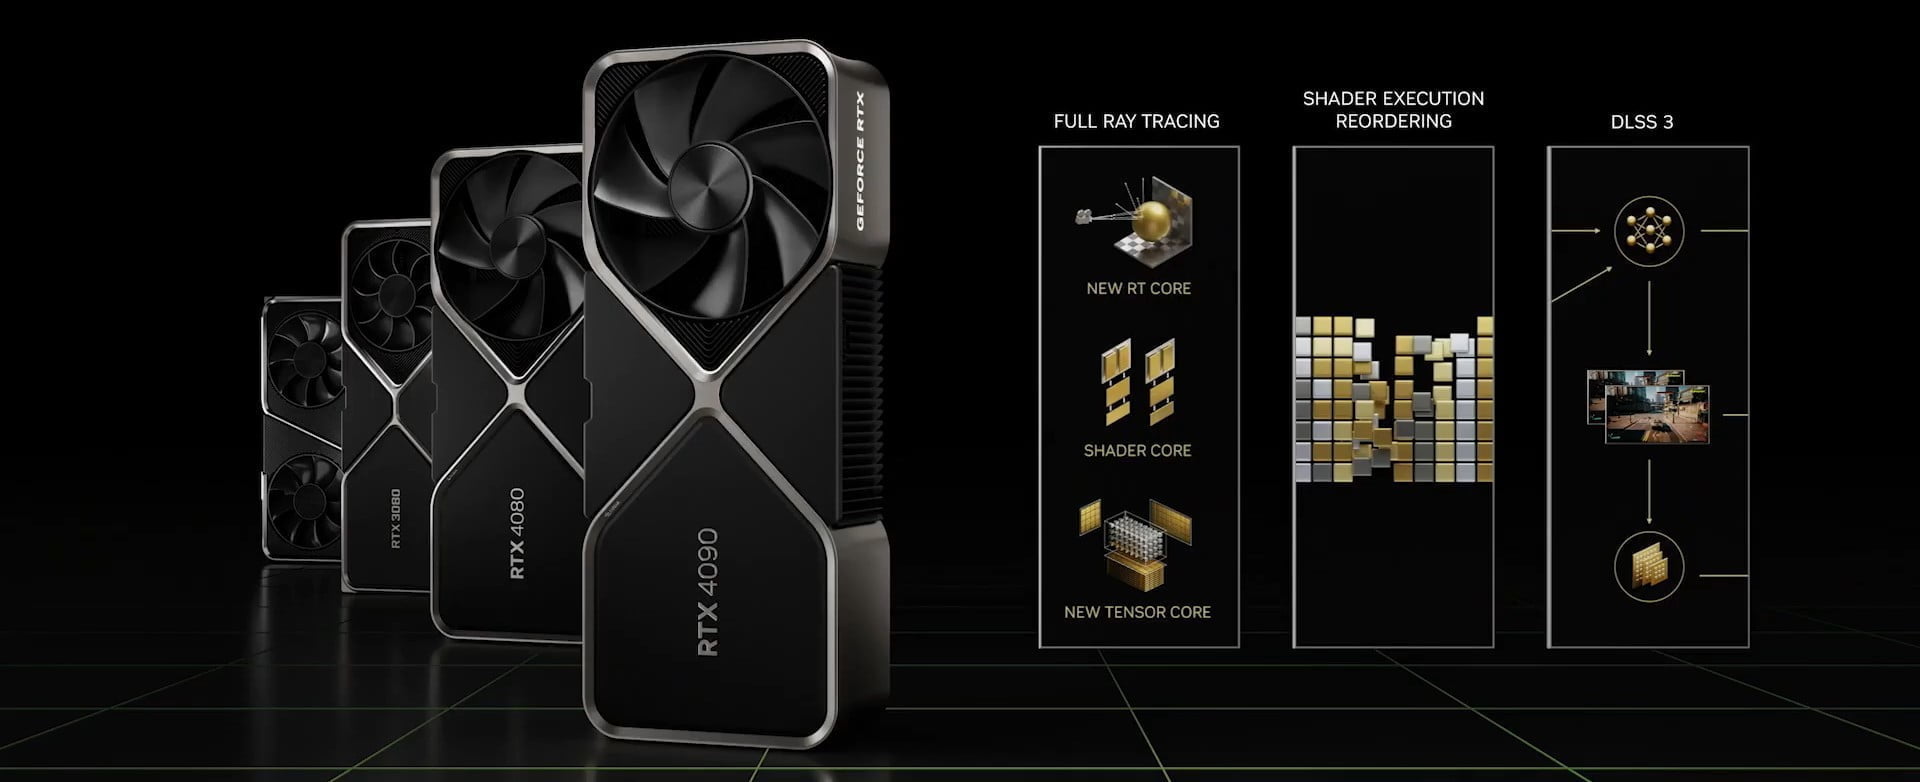 NVIDIA công bố ba mẫu card GeForce RTX 40 Series, RTX 4090 sẽ mở bán trong tháng 10 với giá từ 1599 USD - Image 3